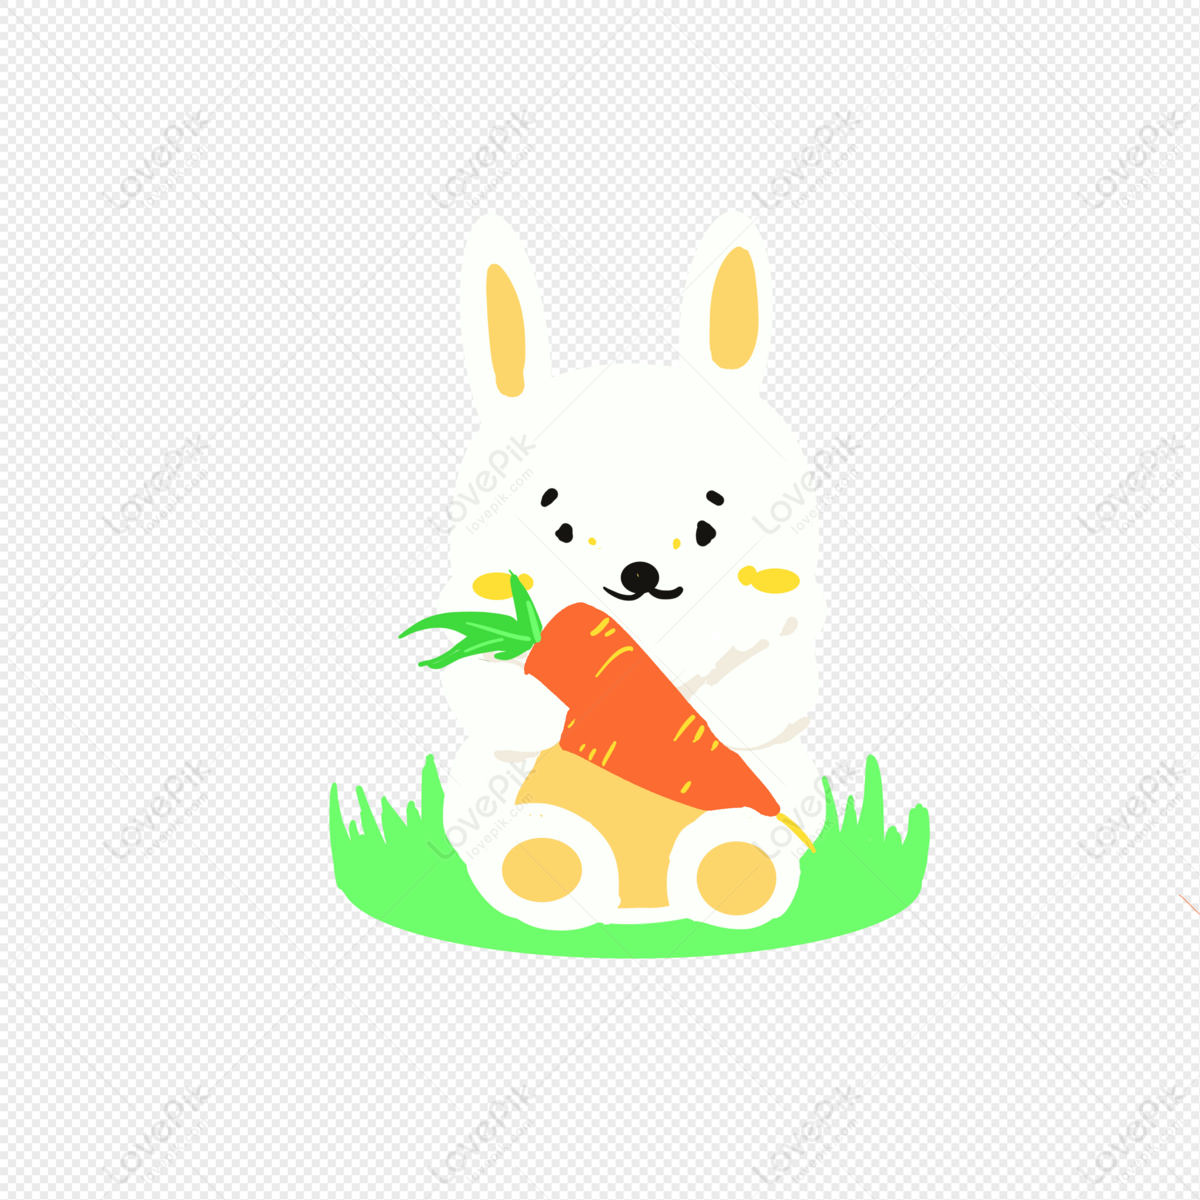 Thỏ cầm cà rốt PNG là hình ảnh động đáng yêu sẽ làm nổi bật trang trí cho bất kỳ dự án sáng tạo của bạn. Hãy xem hình ảnh này để thấy được sự đẹp mắt của hình ảnh thỏ và màu cam tươi sáng của cà rốt.